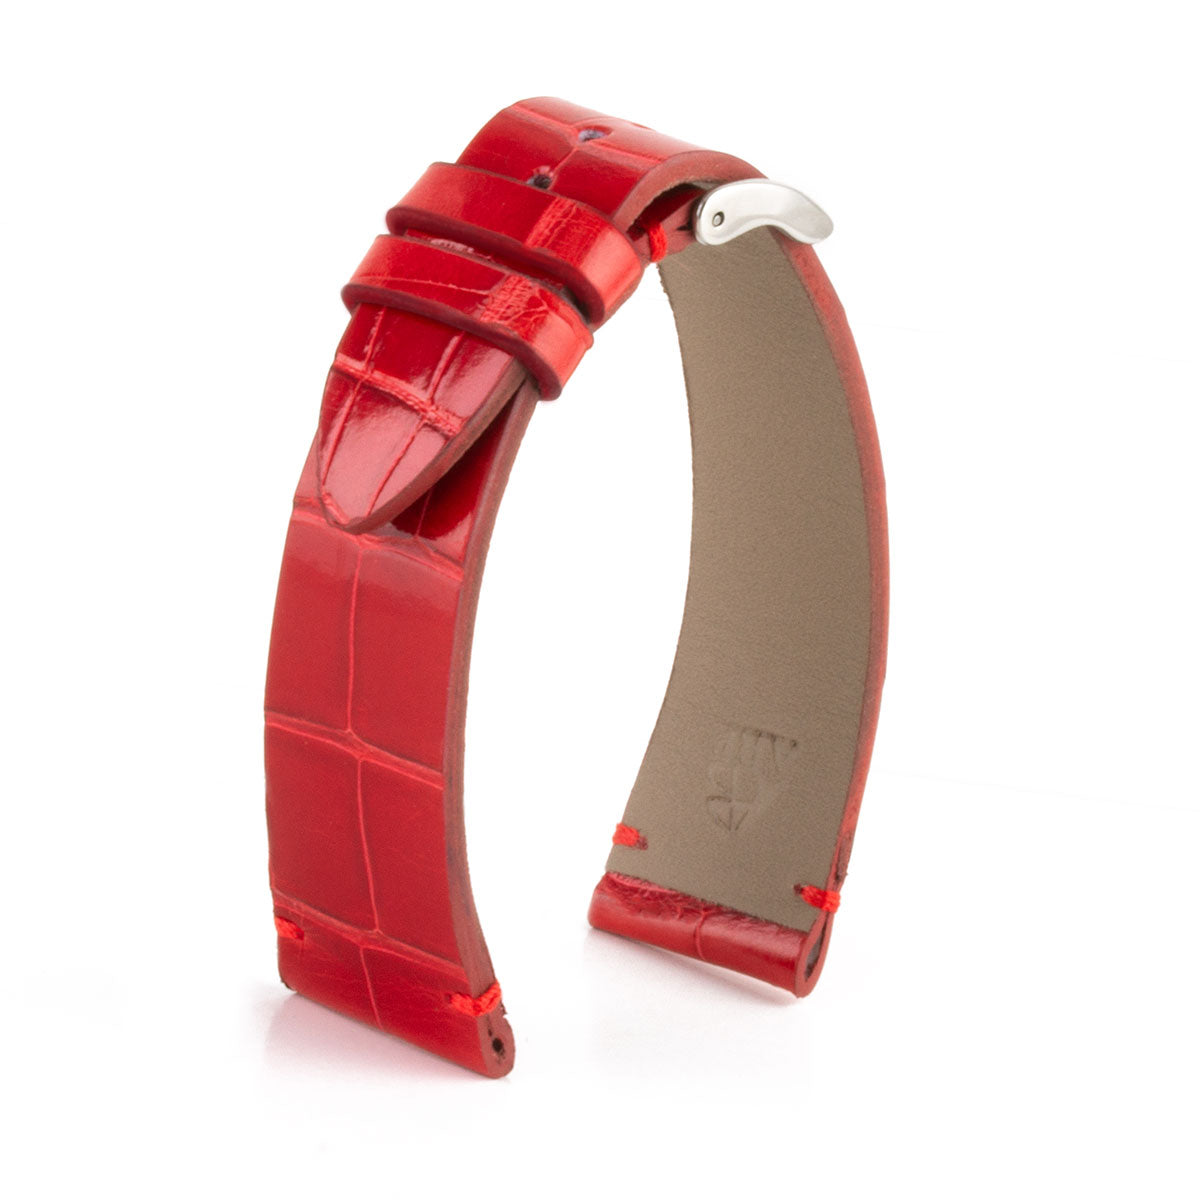 Bracelet de montre en alligator couleur rouge corail - Maison du Galuchat